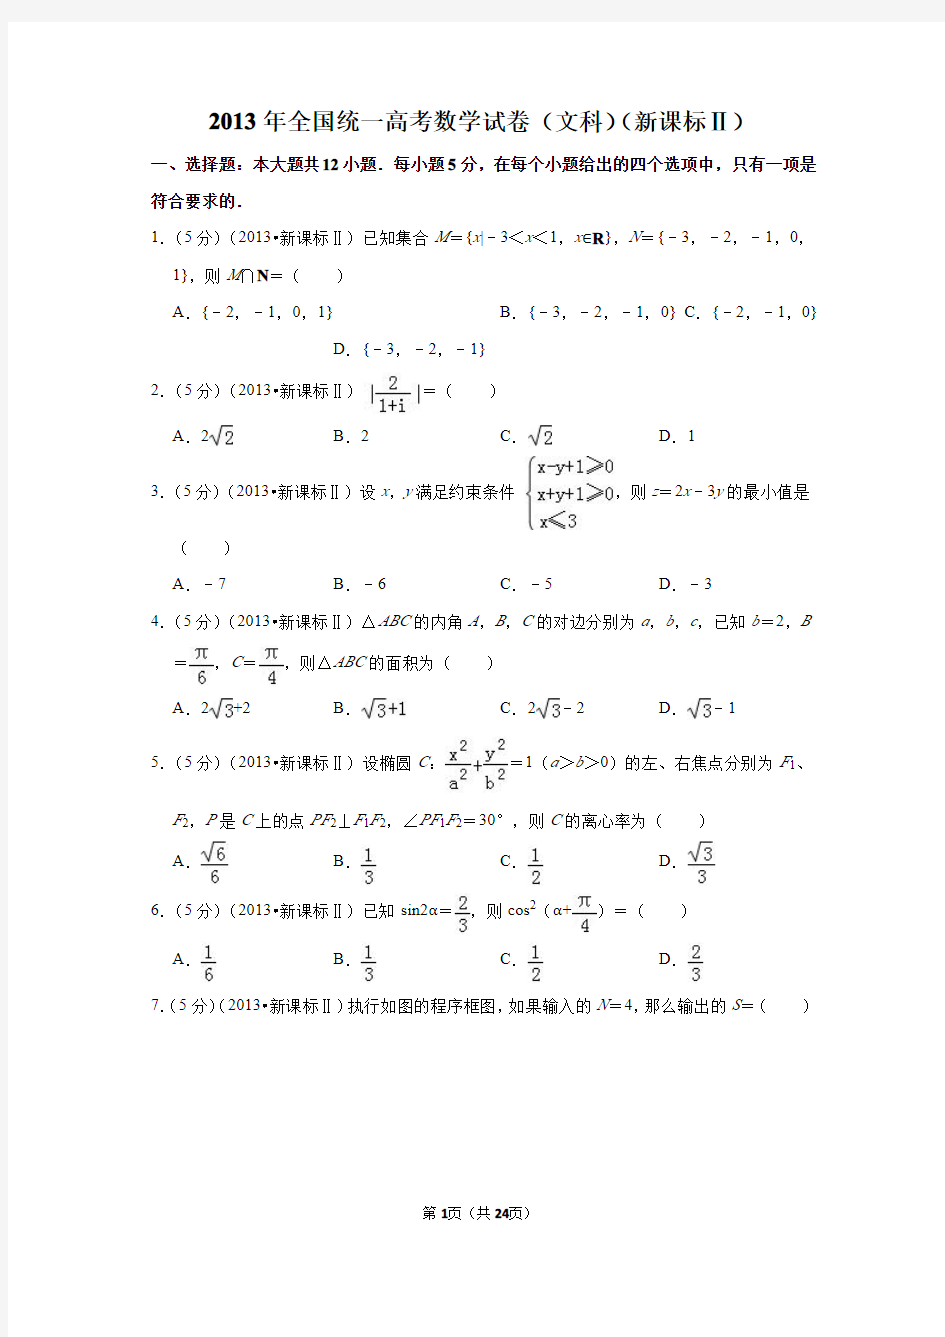 2013年高考数学试题及答案(全国卷文数3套)